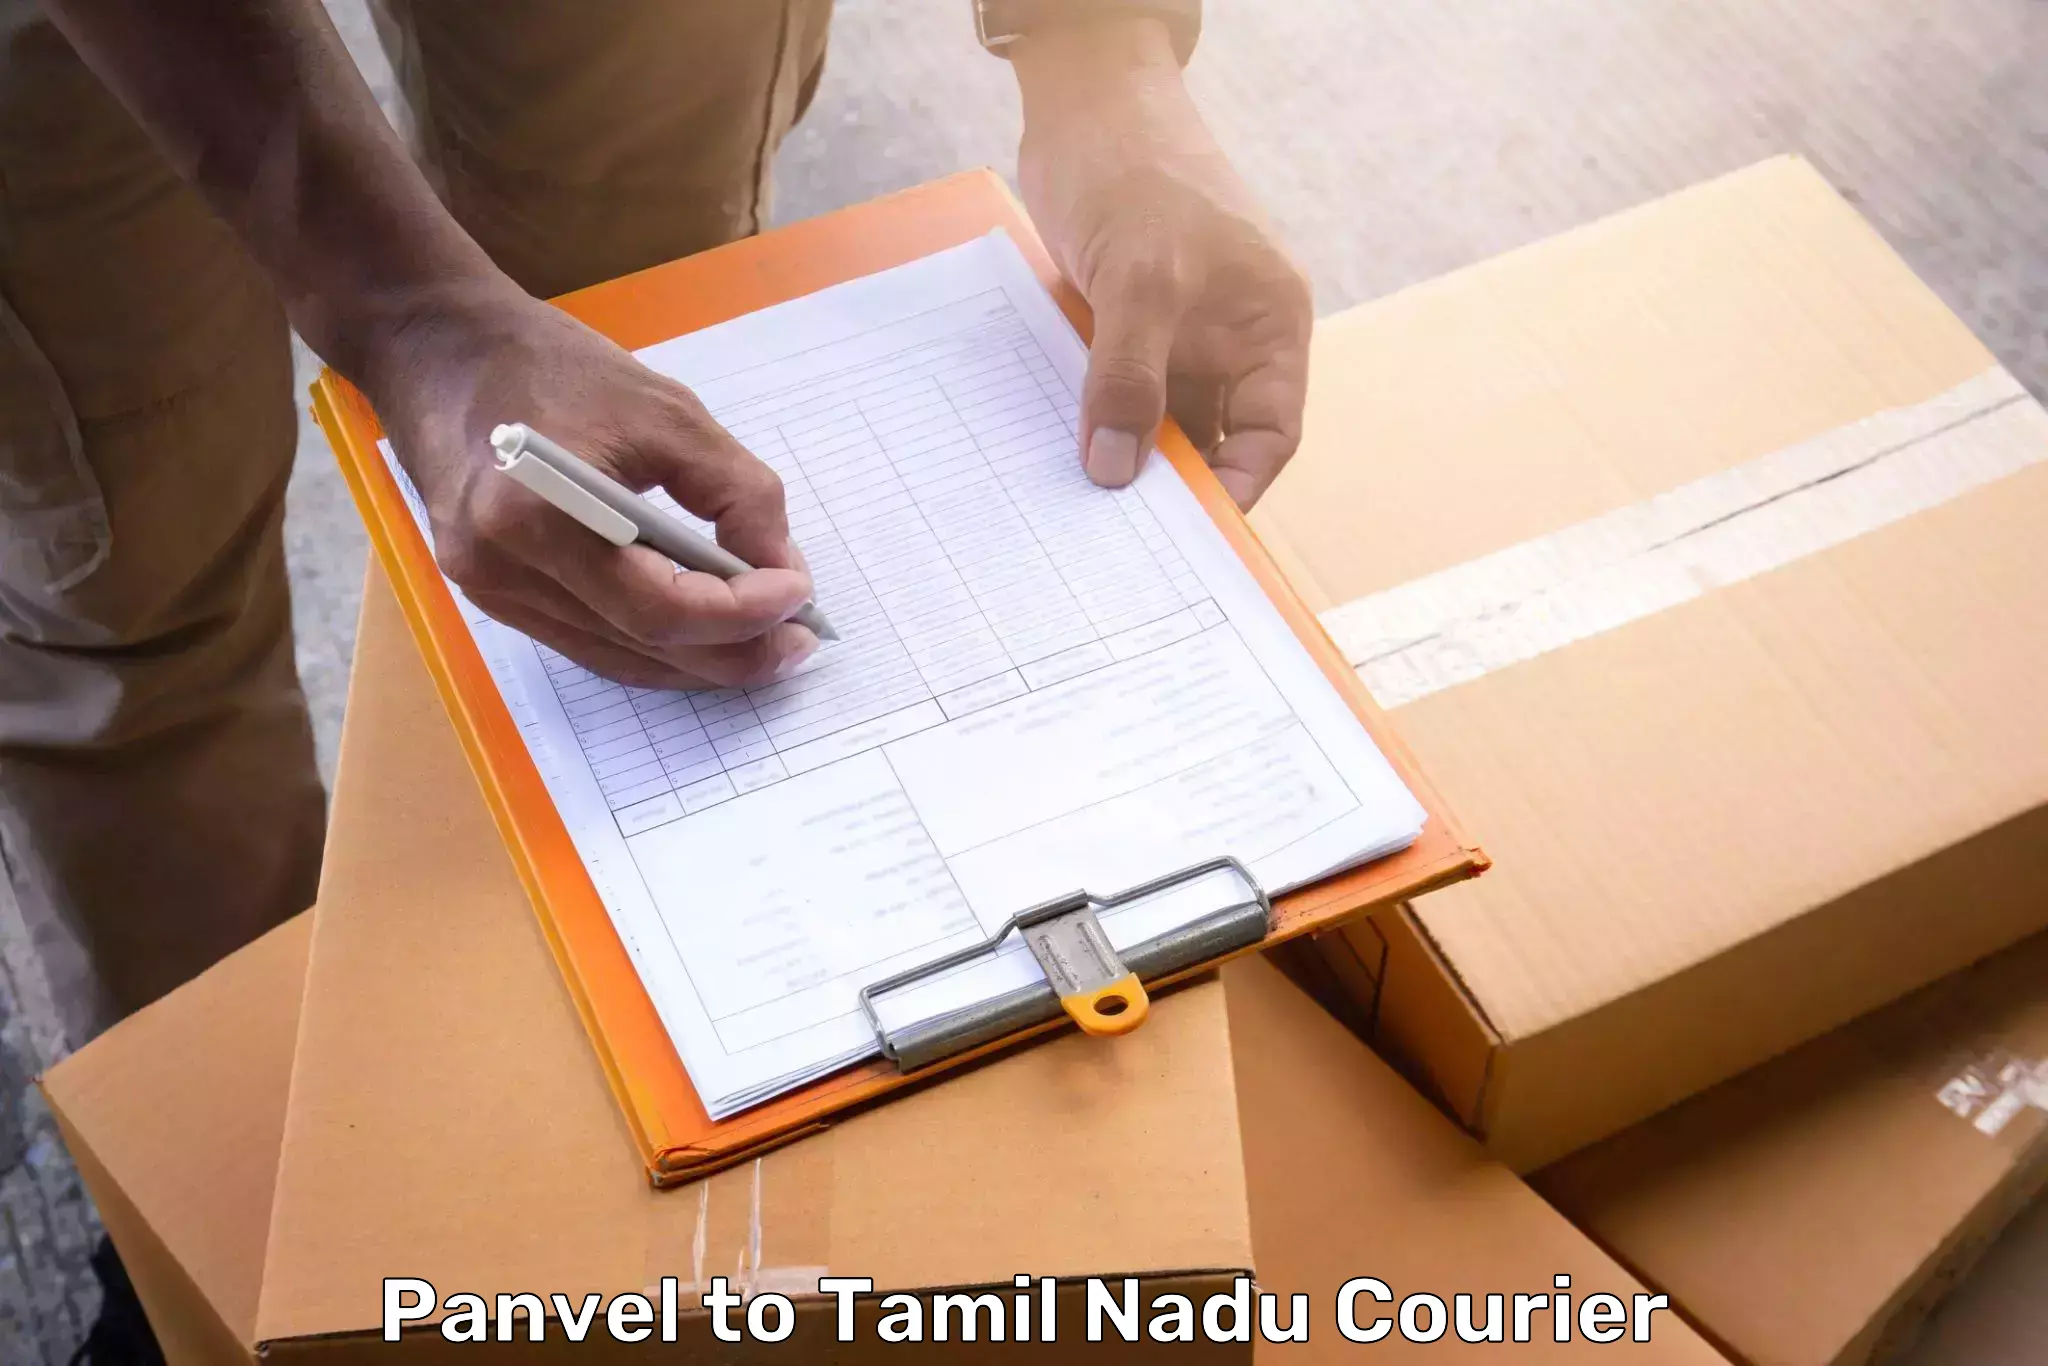 Urgent luggage shipment Panvel to Melakaveri